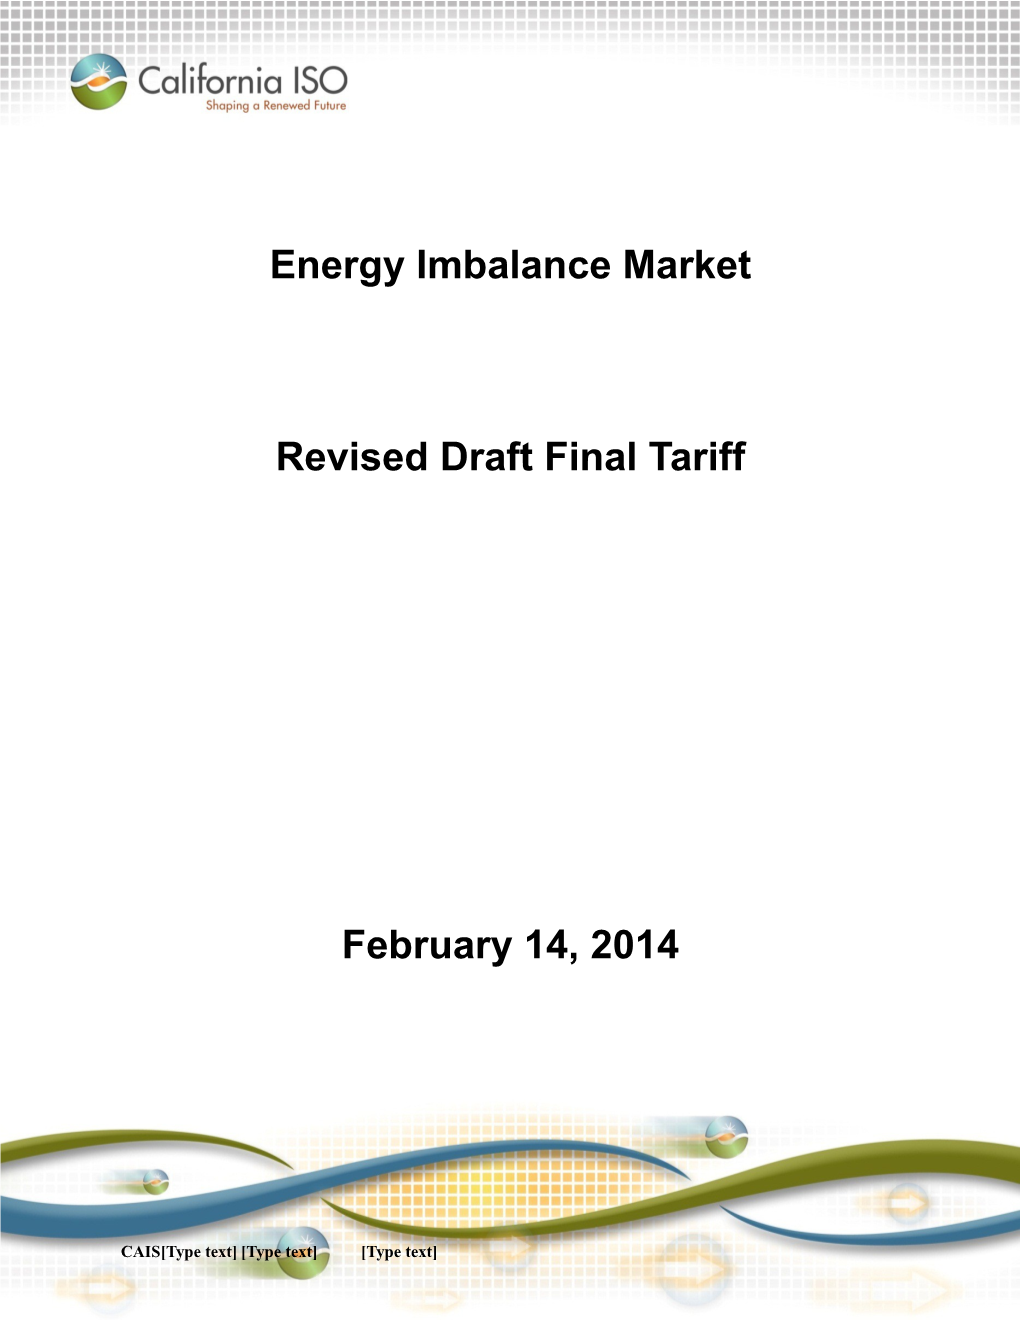 Revised Draft Final Tariff Language - Redlined - Energy Imbalance Market